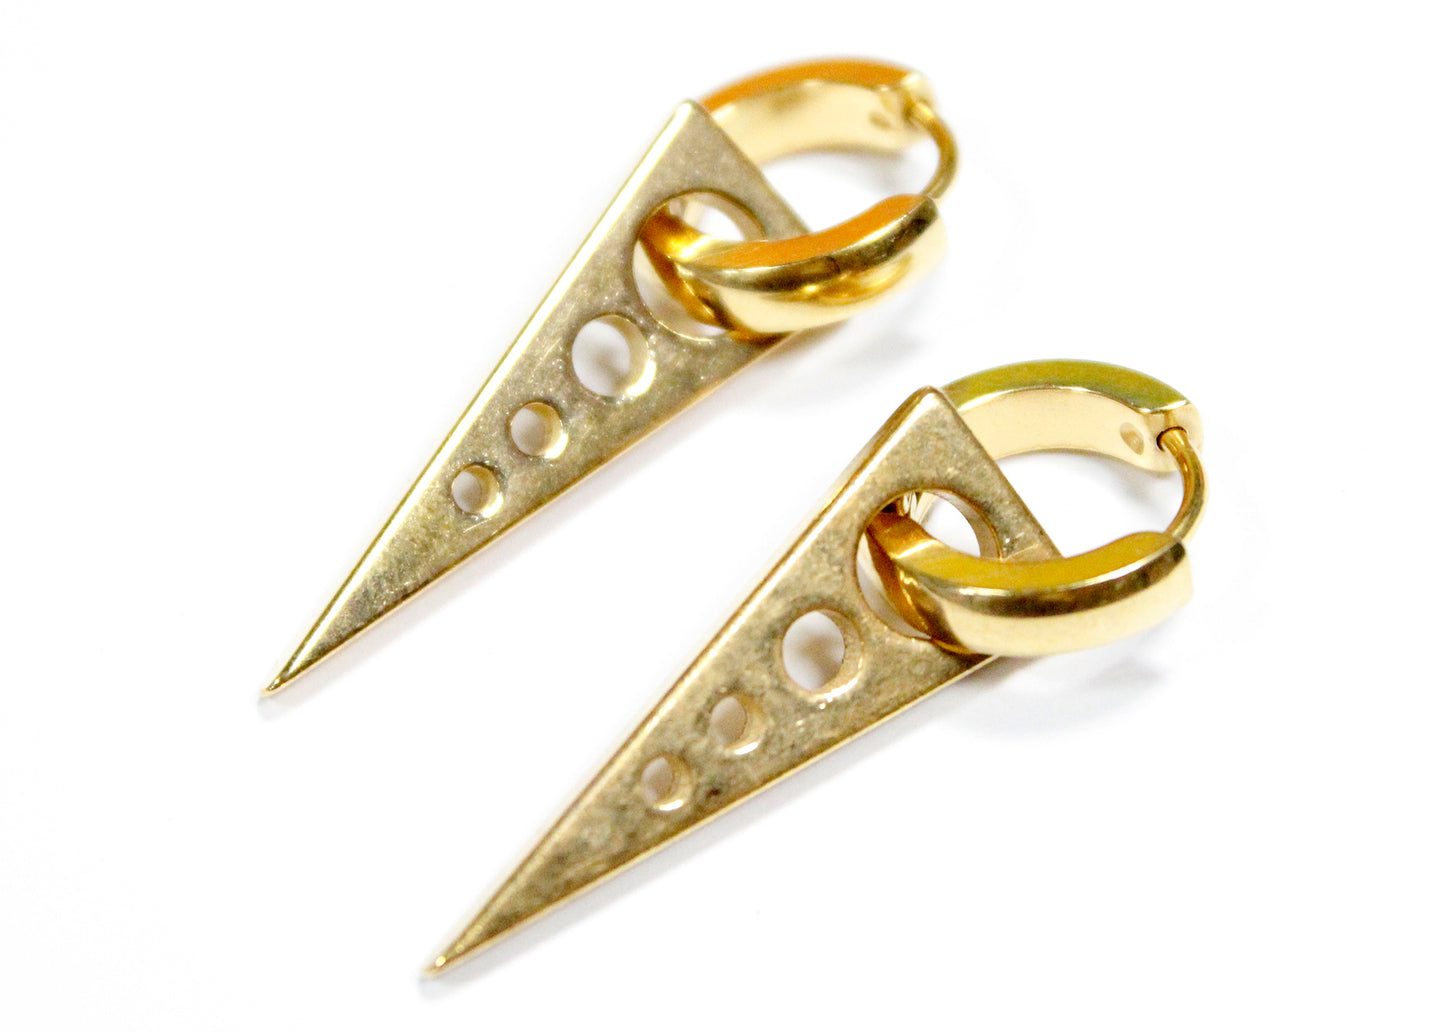 Triangle Hoop Earrings in Gold